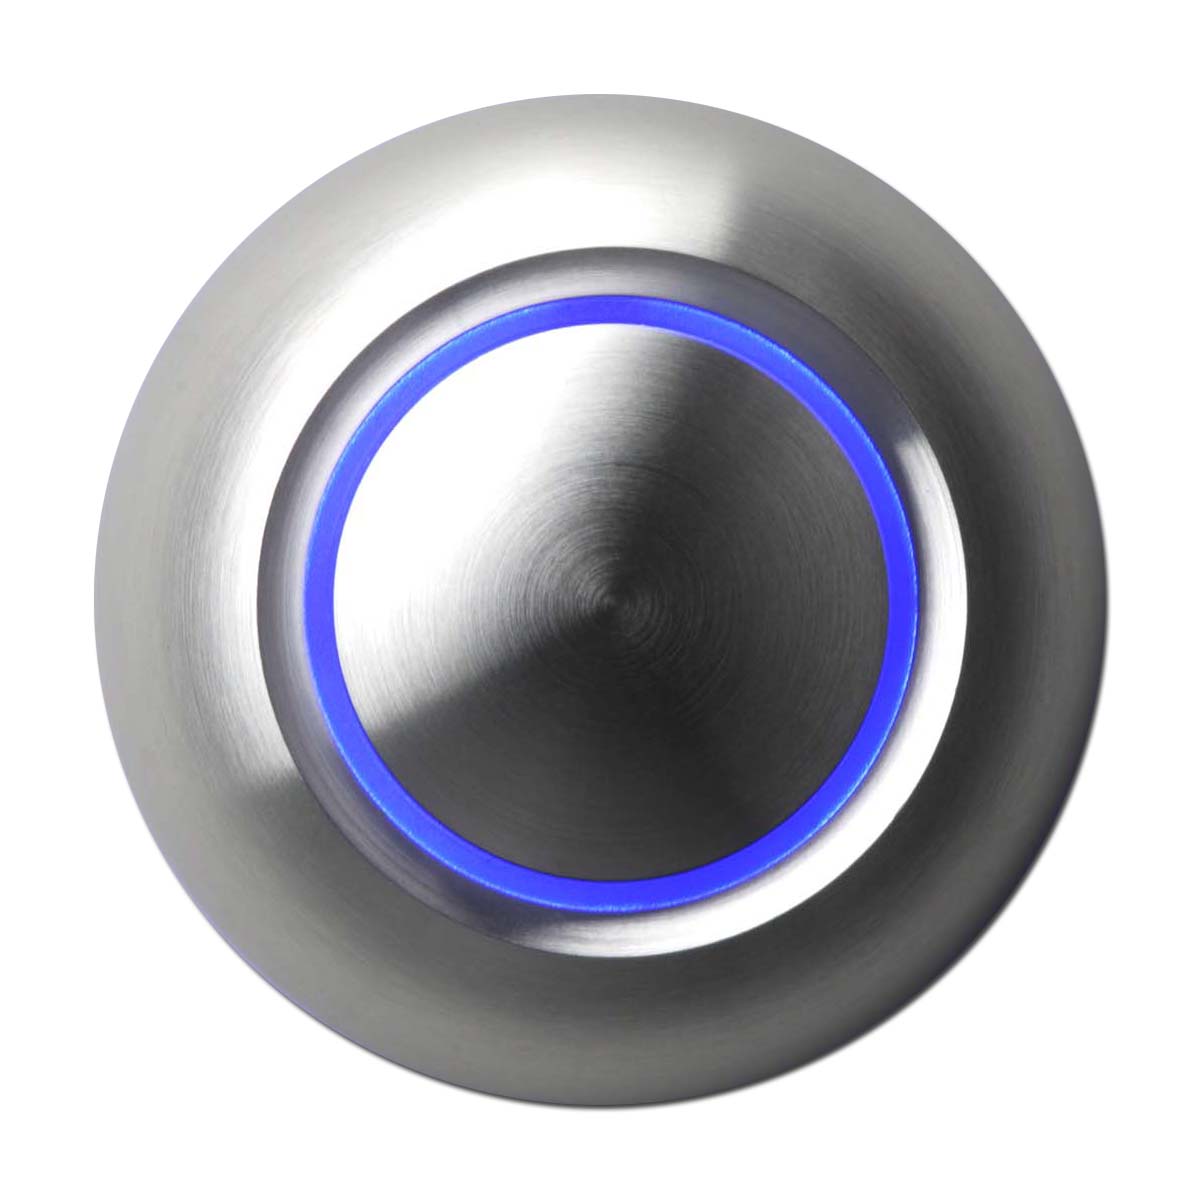 Дверной звонок черный. Дверной звонок true illuminated Doorbell button, цвет Architectural Bronze. Кнопка металлическая с подсветкой. Кнопка звонка с подсветкой. Кнопка звонка металлическая.